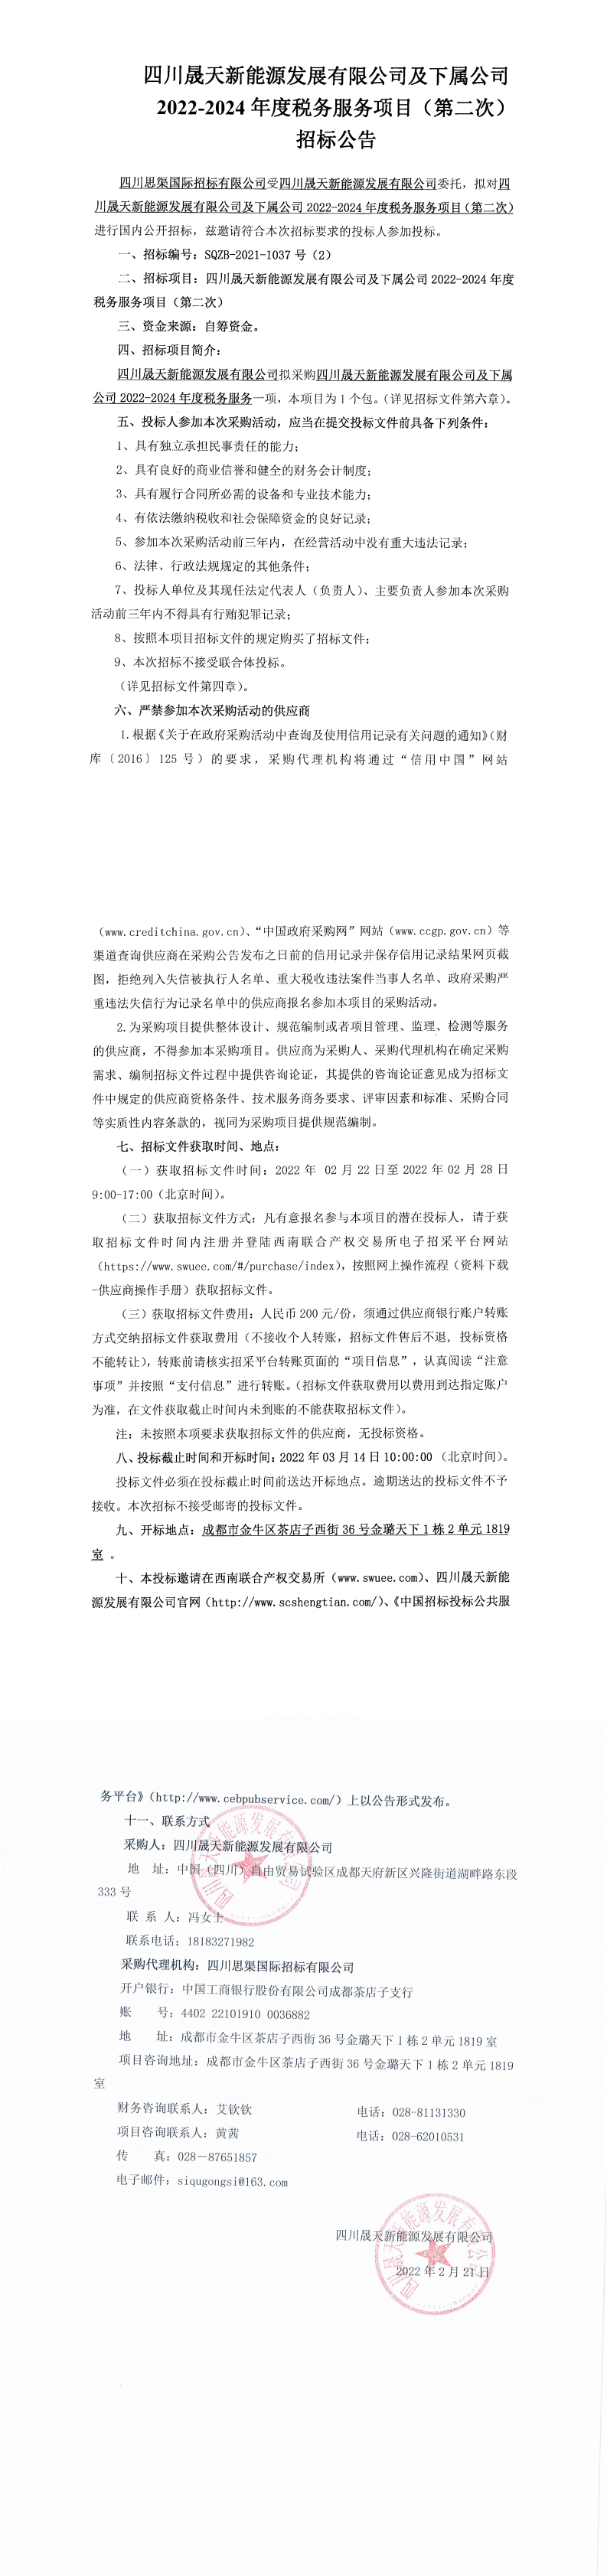 四川晟天新能源发展有限公司及下属公司2022-2024年度税务服务项目（第二次）招标公告_0.png